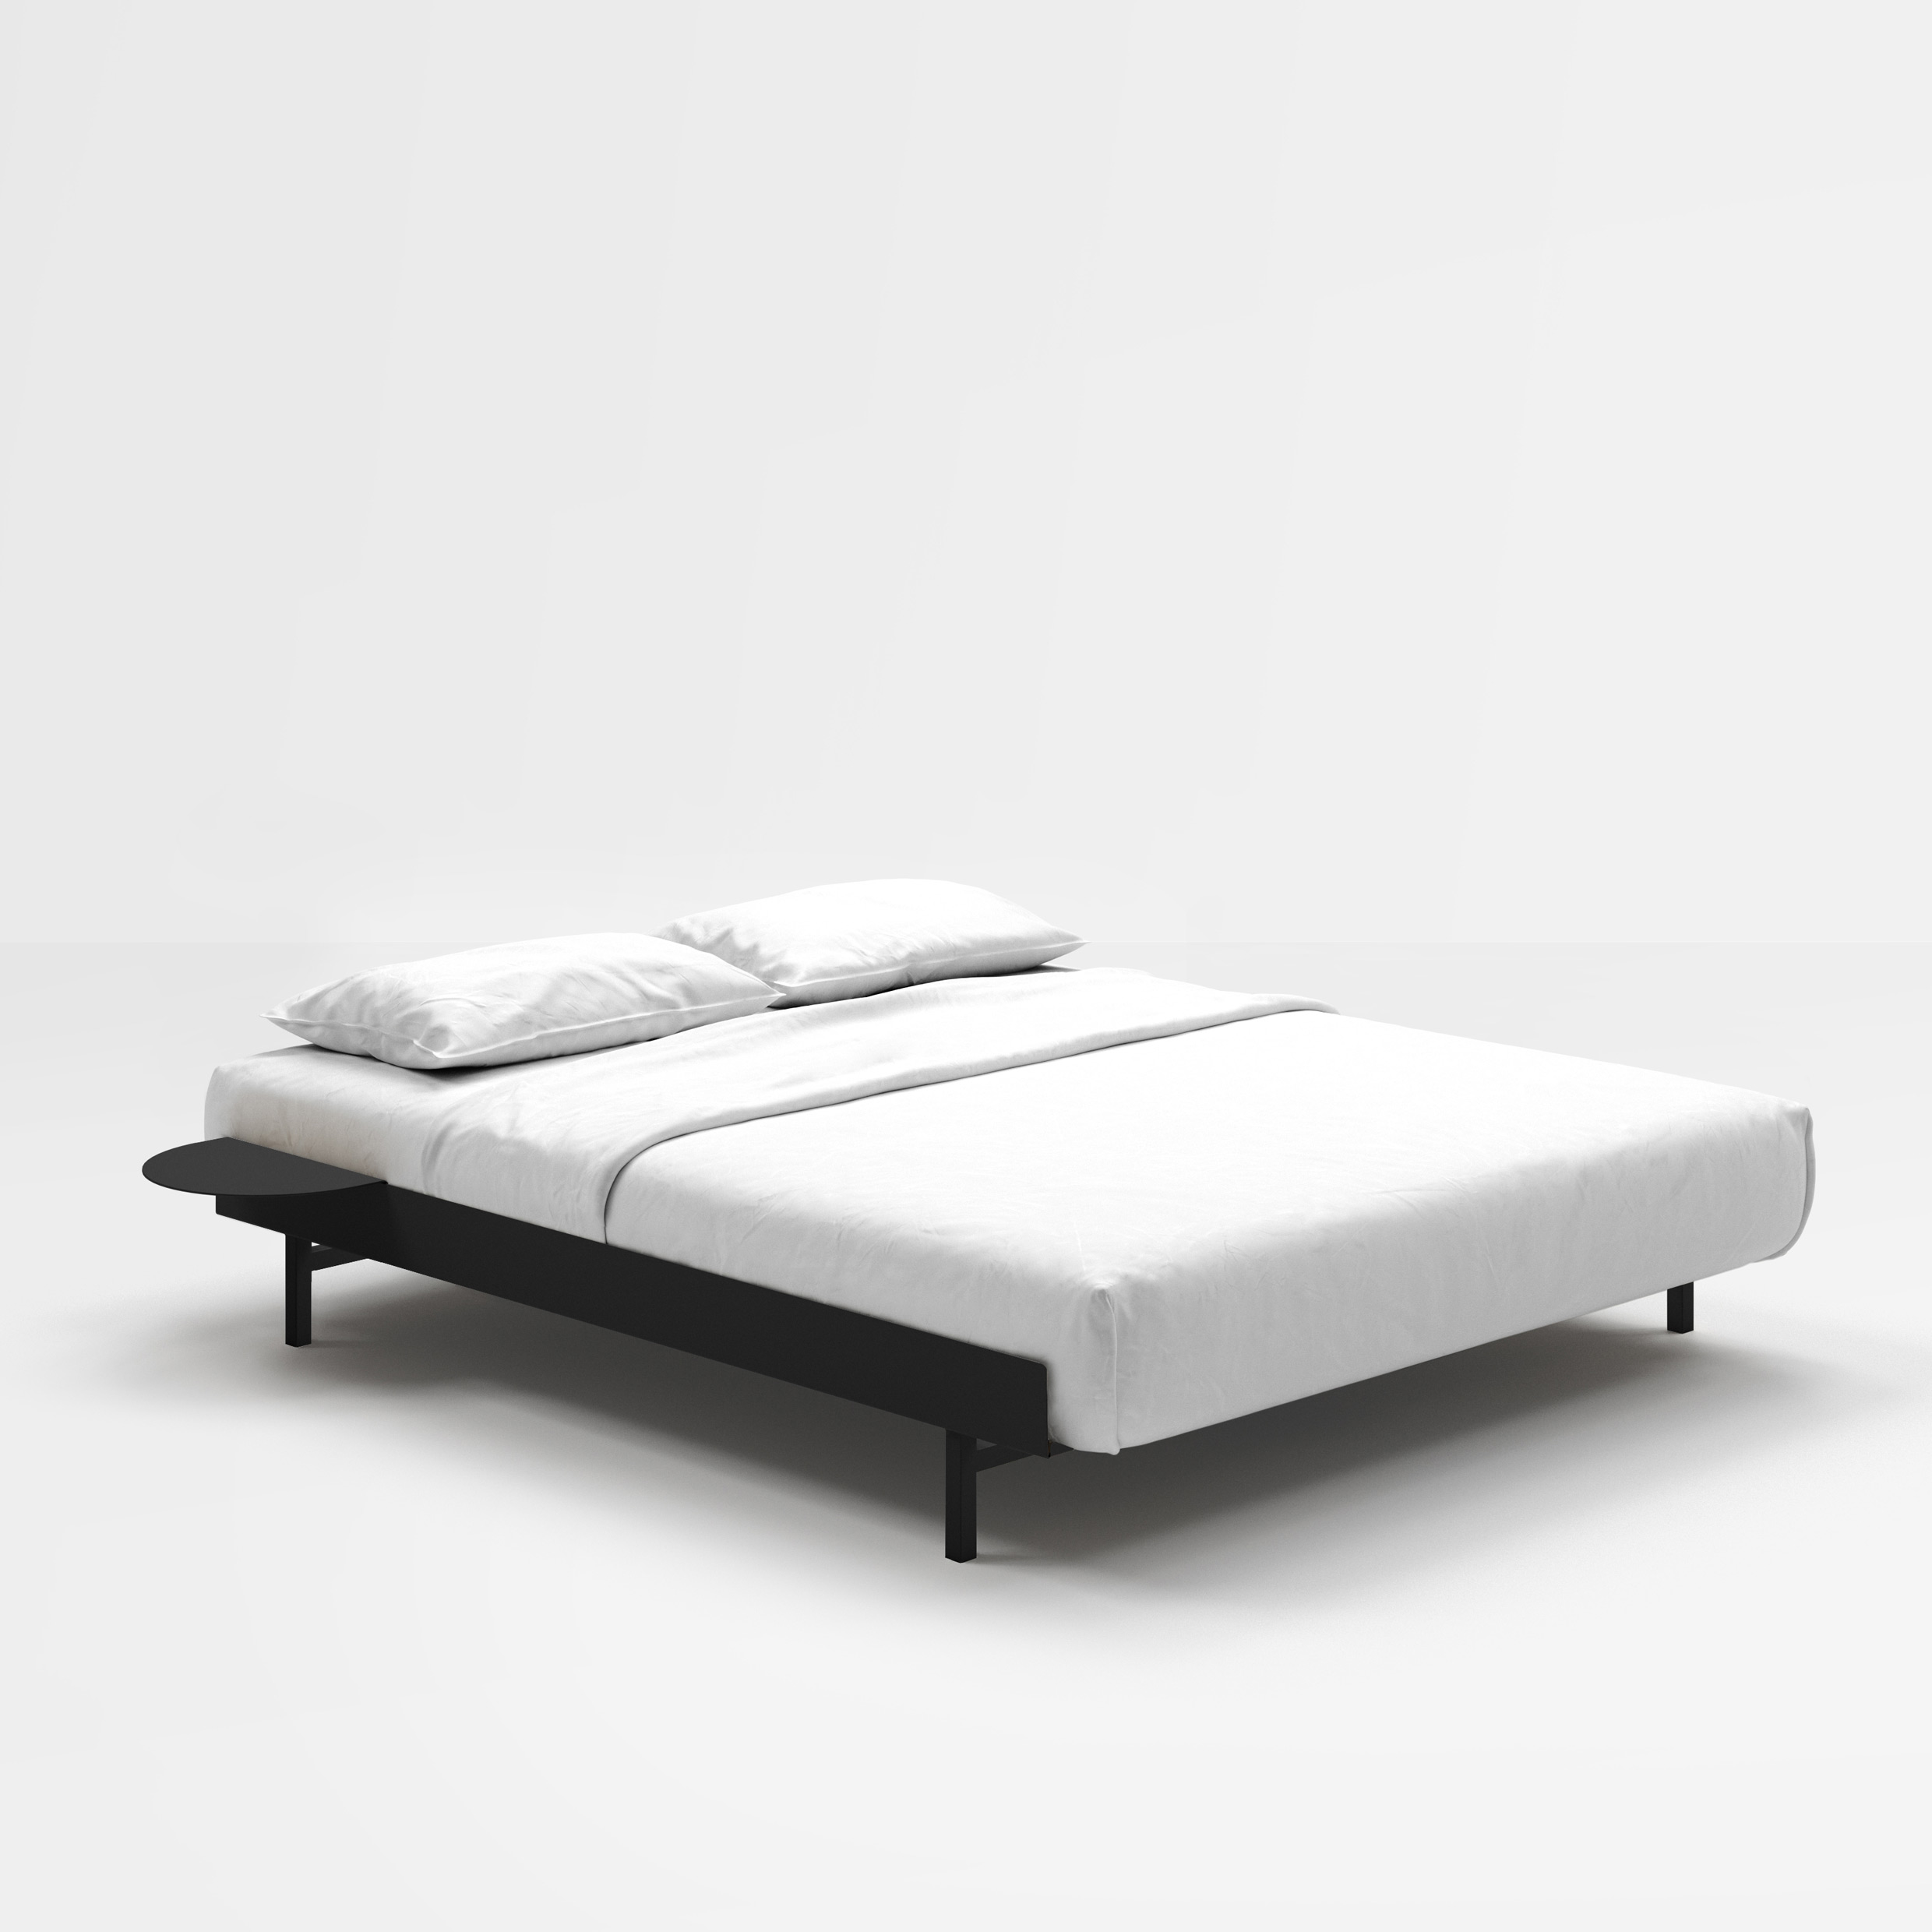 MOEBE // BED - 140 CM | INKL. SLATS + 2x SIDE TABLE | STEEL | BLACK